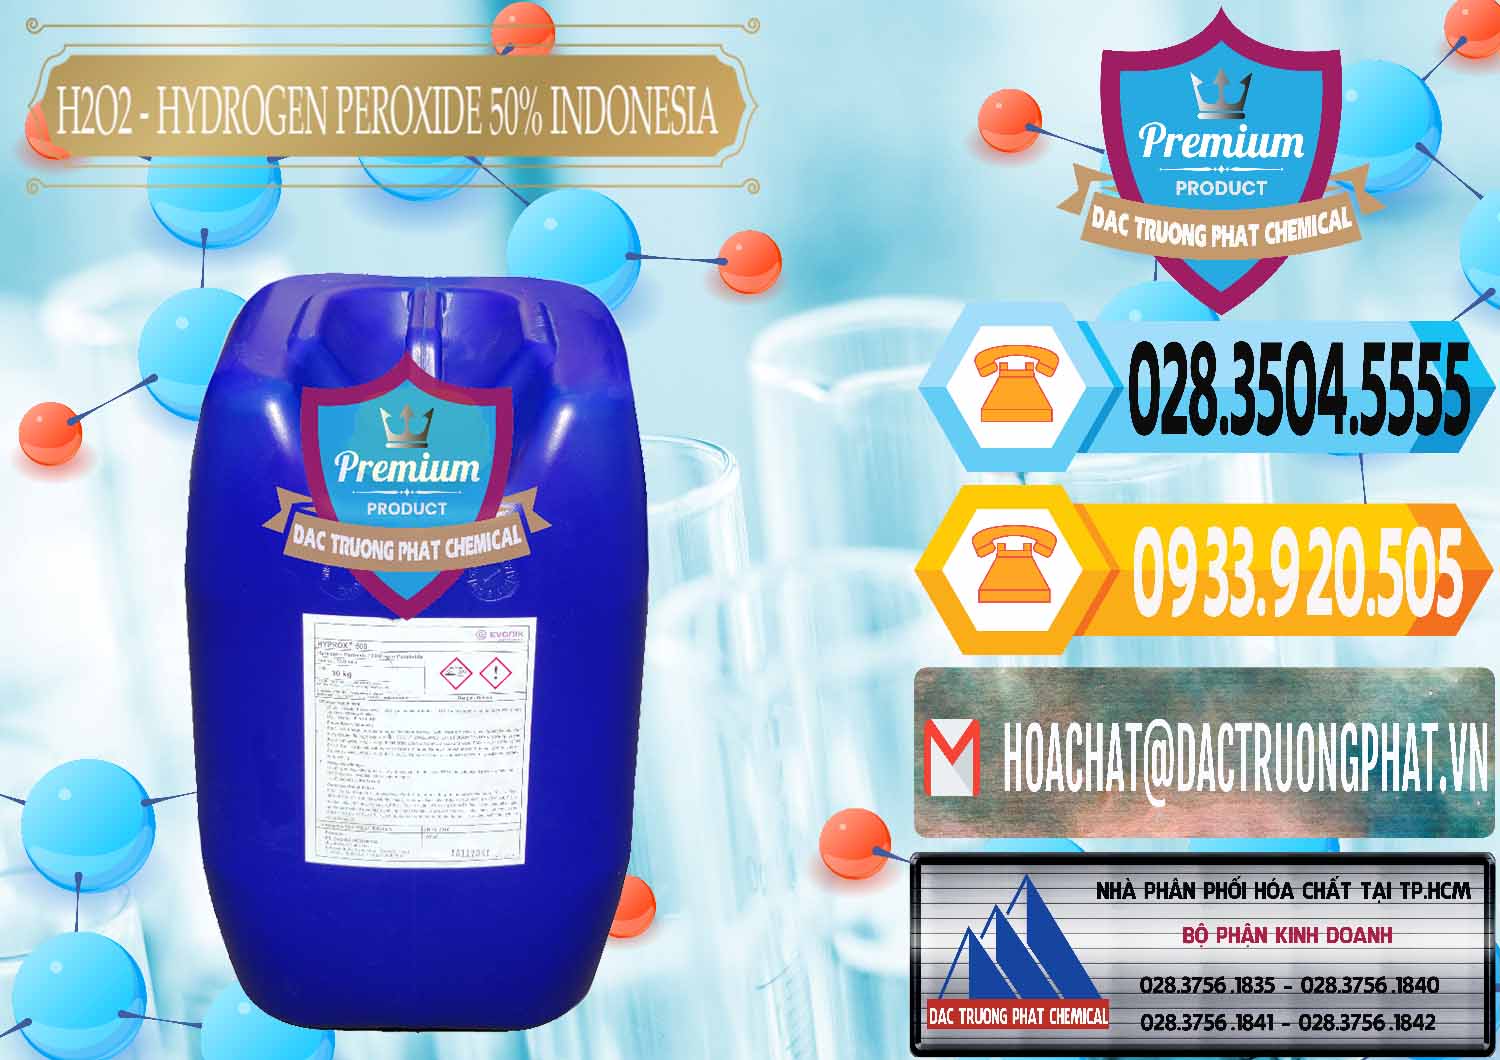 Nơi kinh doanh - bán H2O2 - Hydrogen Peroxide 50% Evonik Indonesia - 0070 - Cty chuyên bán - cung cấp hóa chất tại TP.HCM - hoachattayrua.net